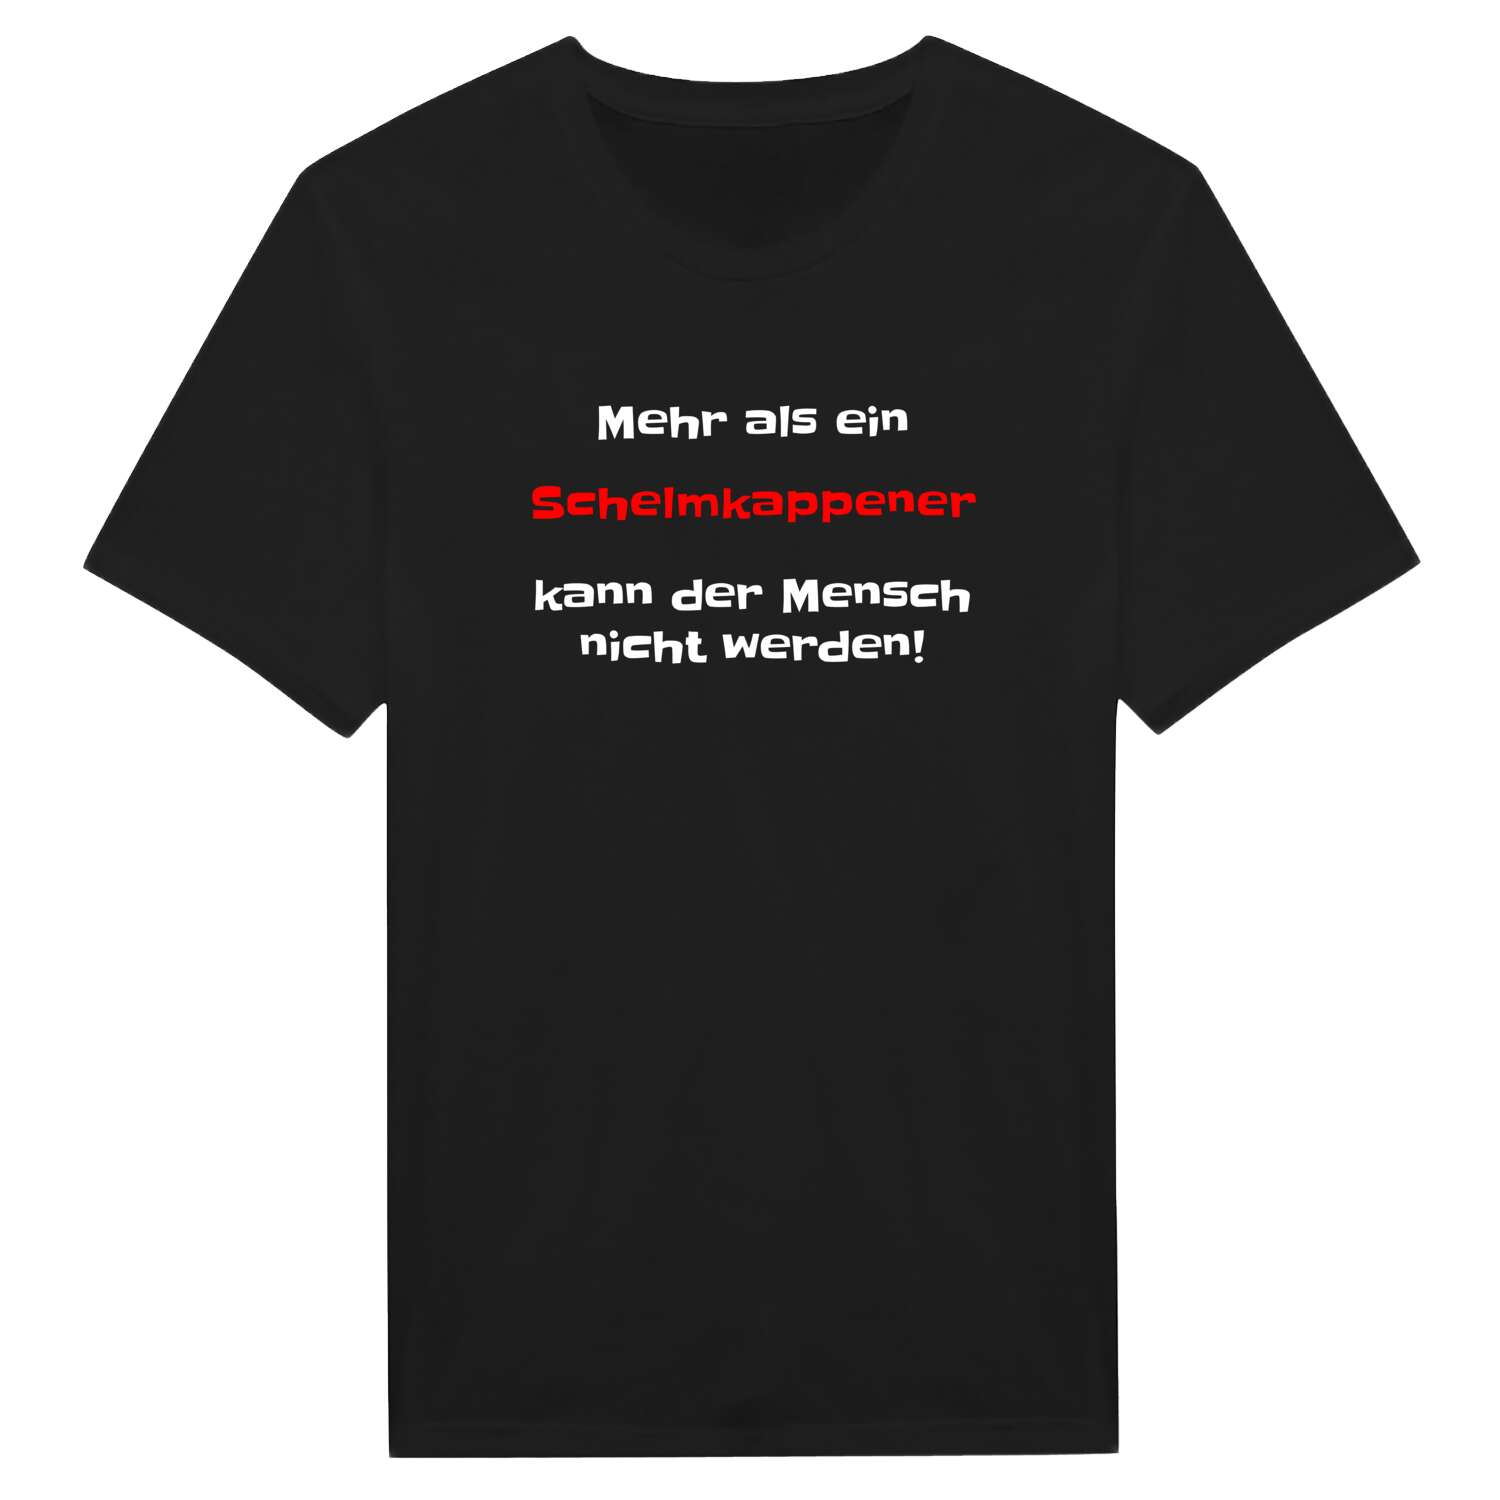 Schelmkappe T-Shirt »Mehr als ein«